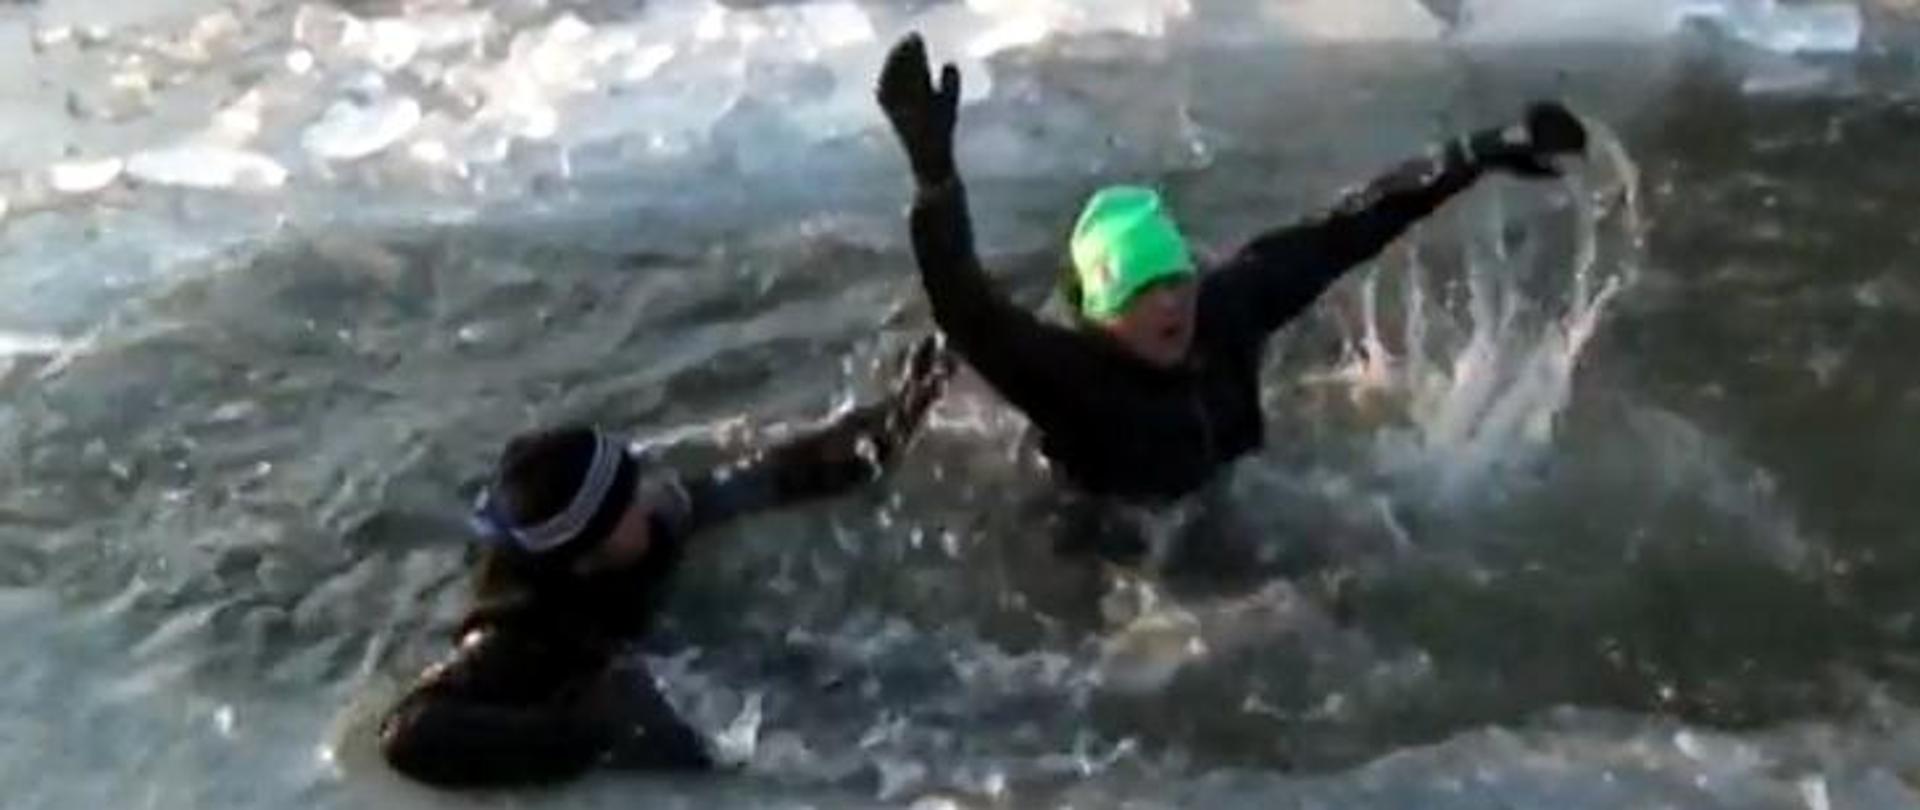 dwie osoby wpadły do wody po tym, jak załamał się pod nimi lód